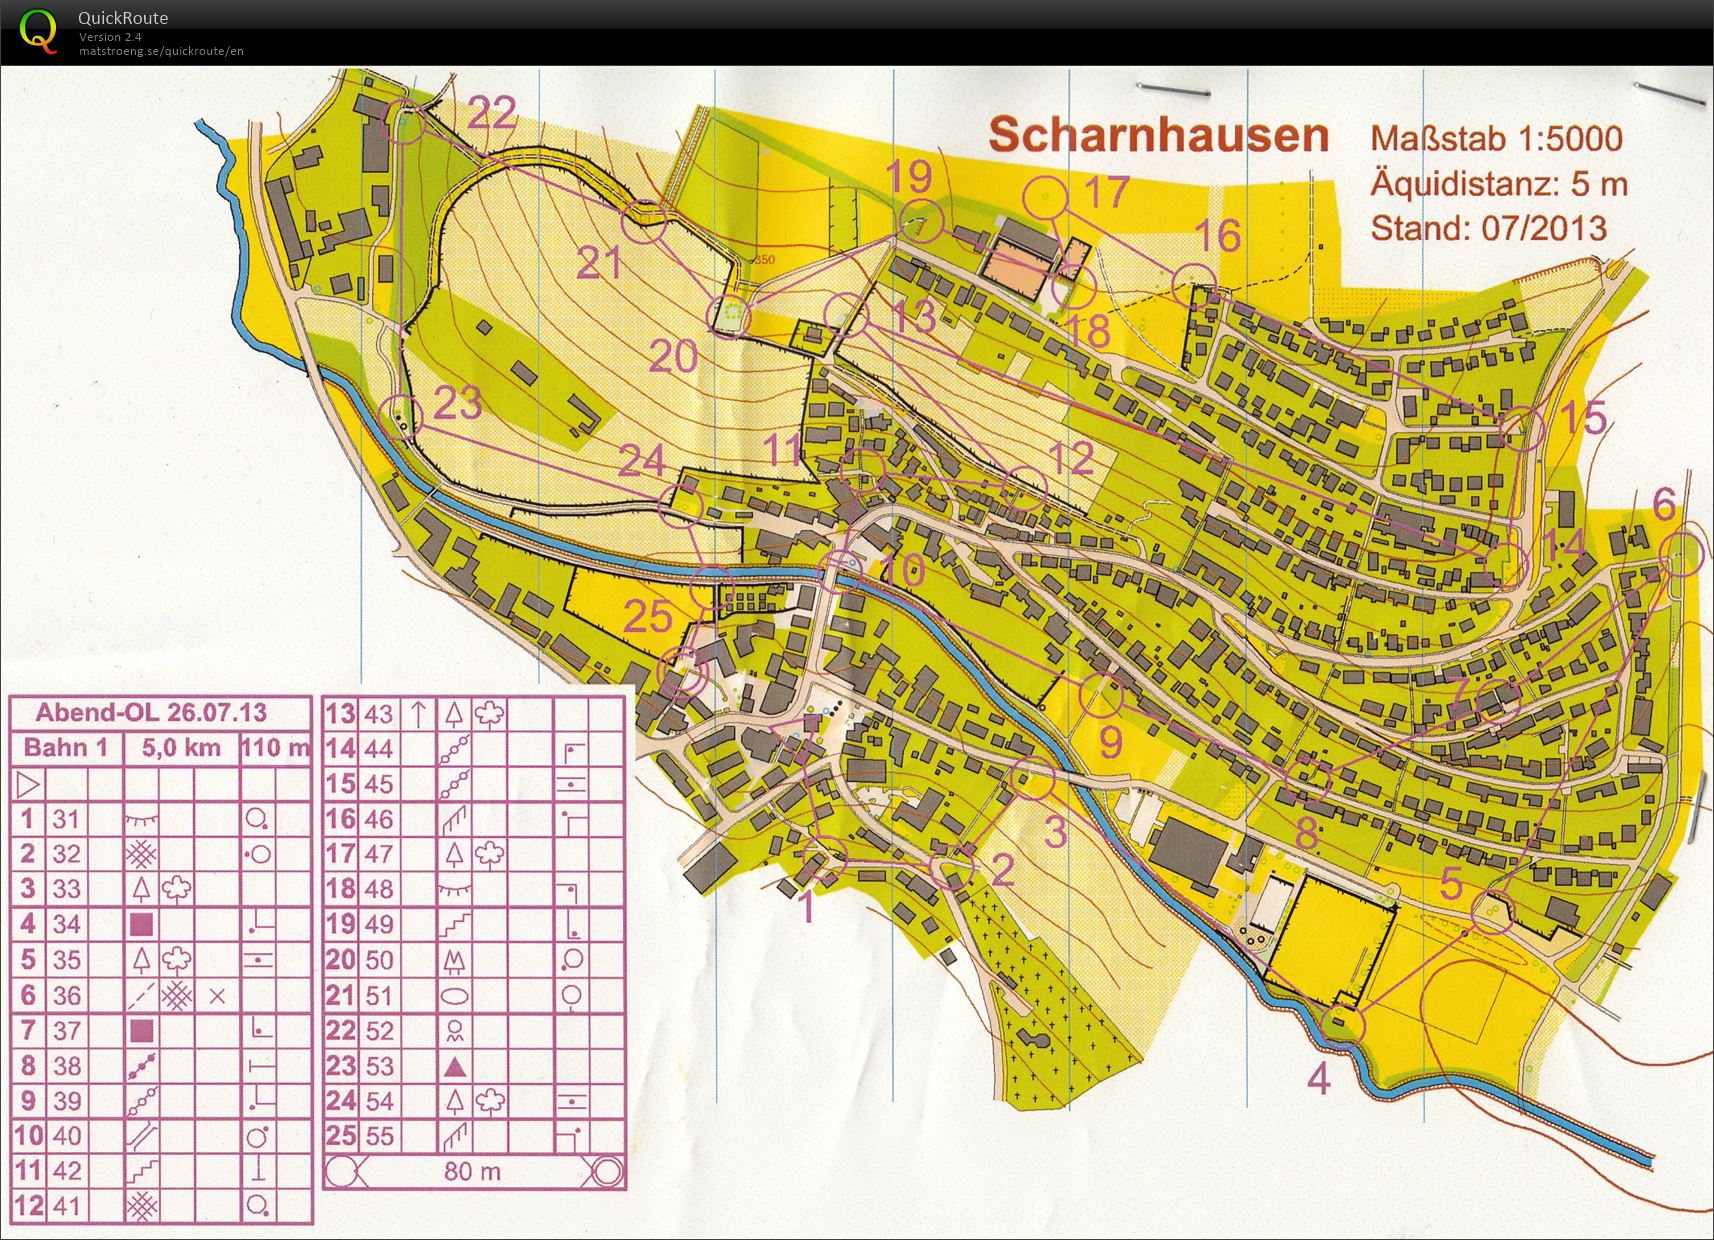 Training Scharnhausen (26-07-2013)